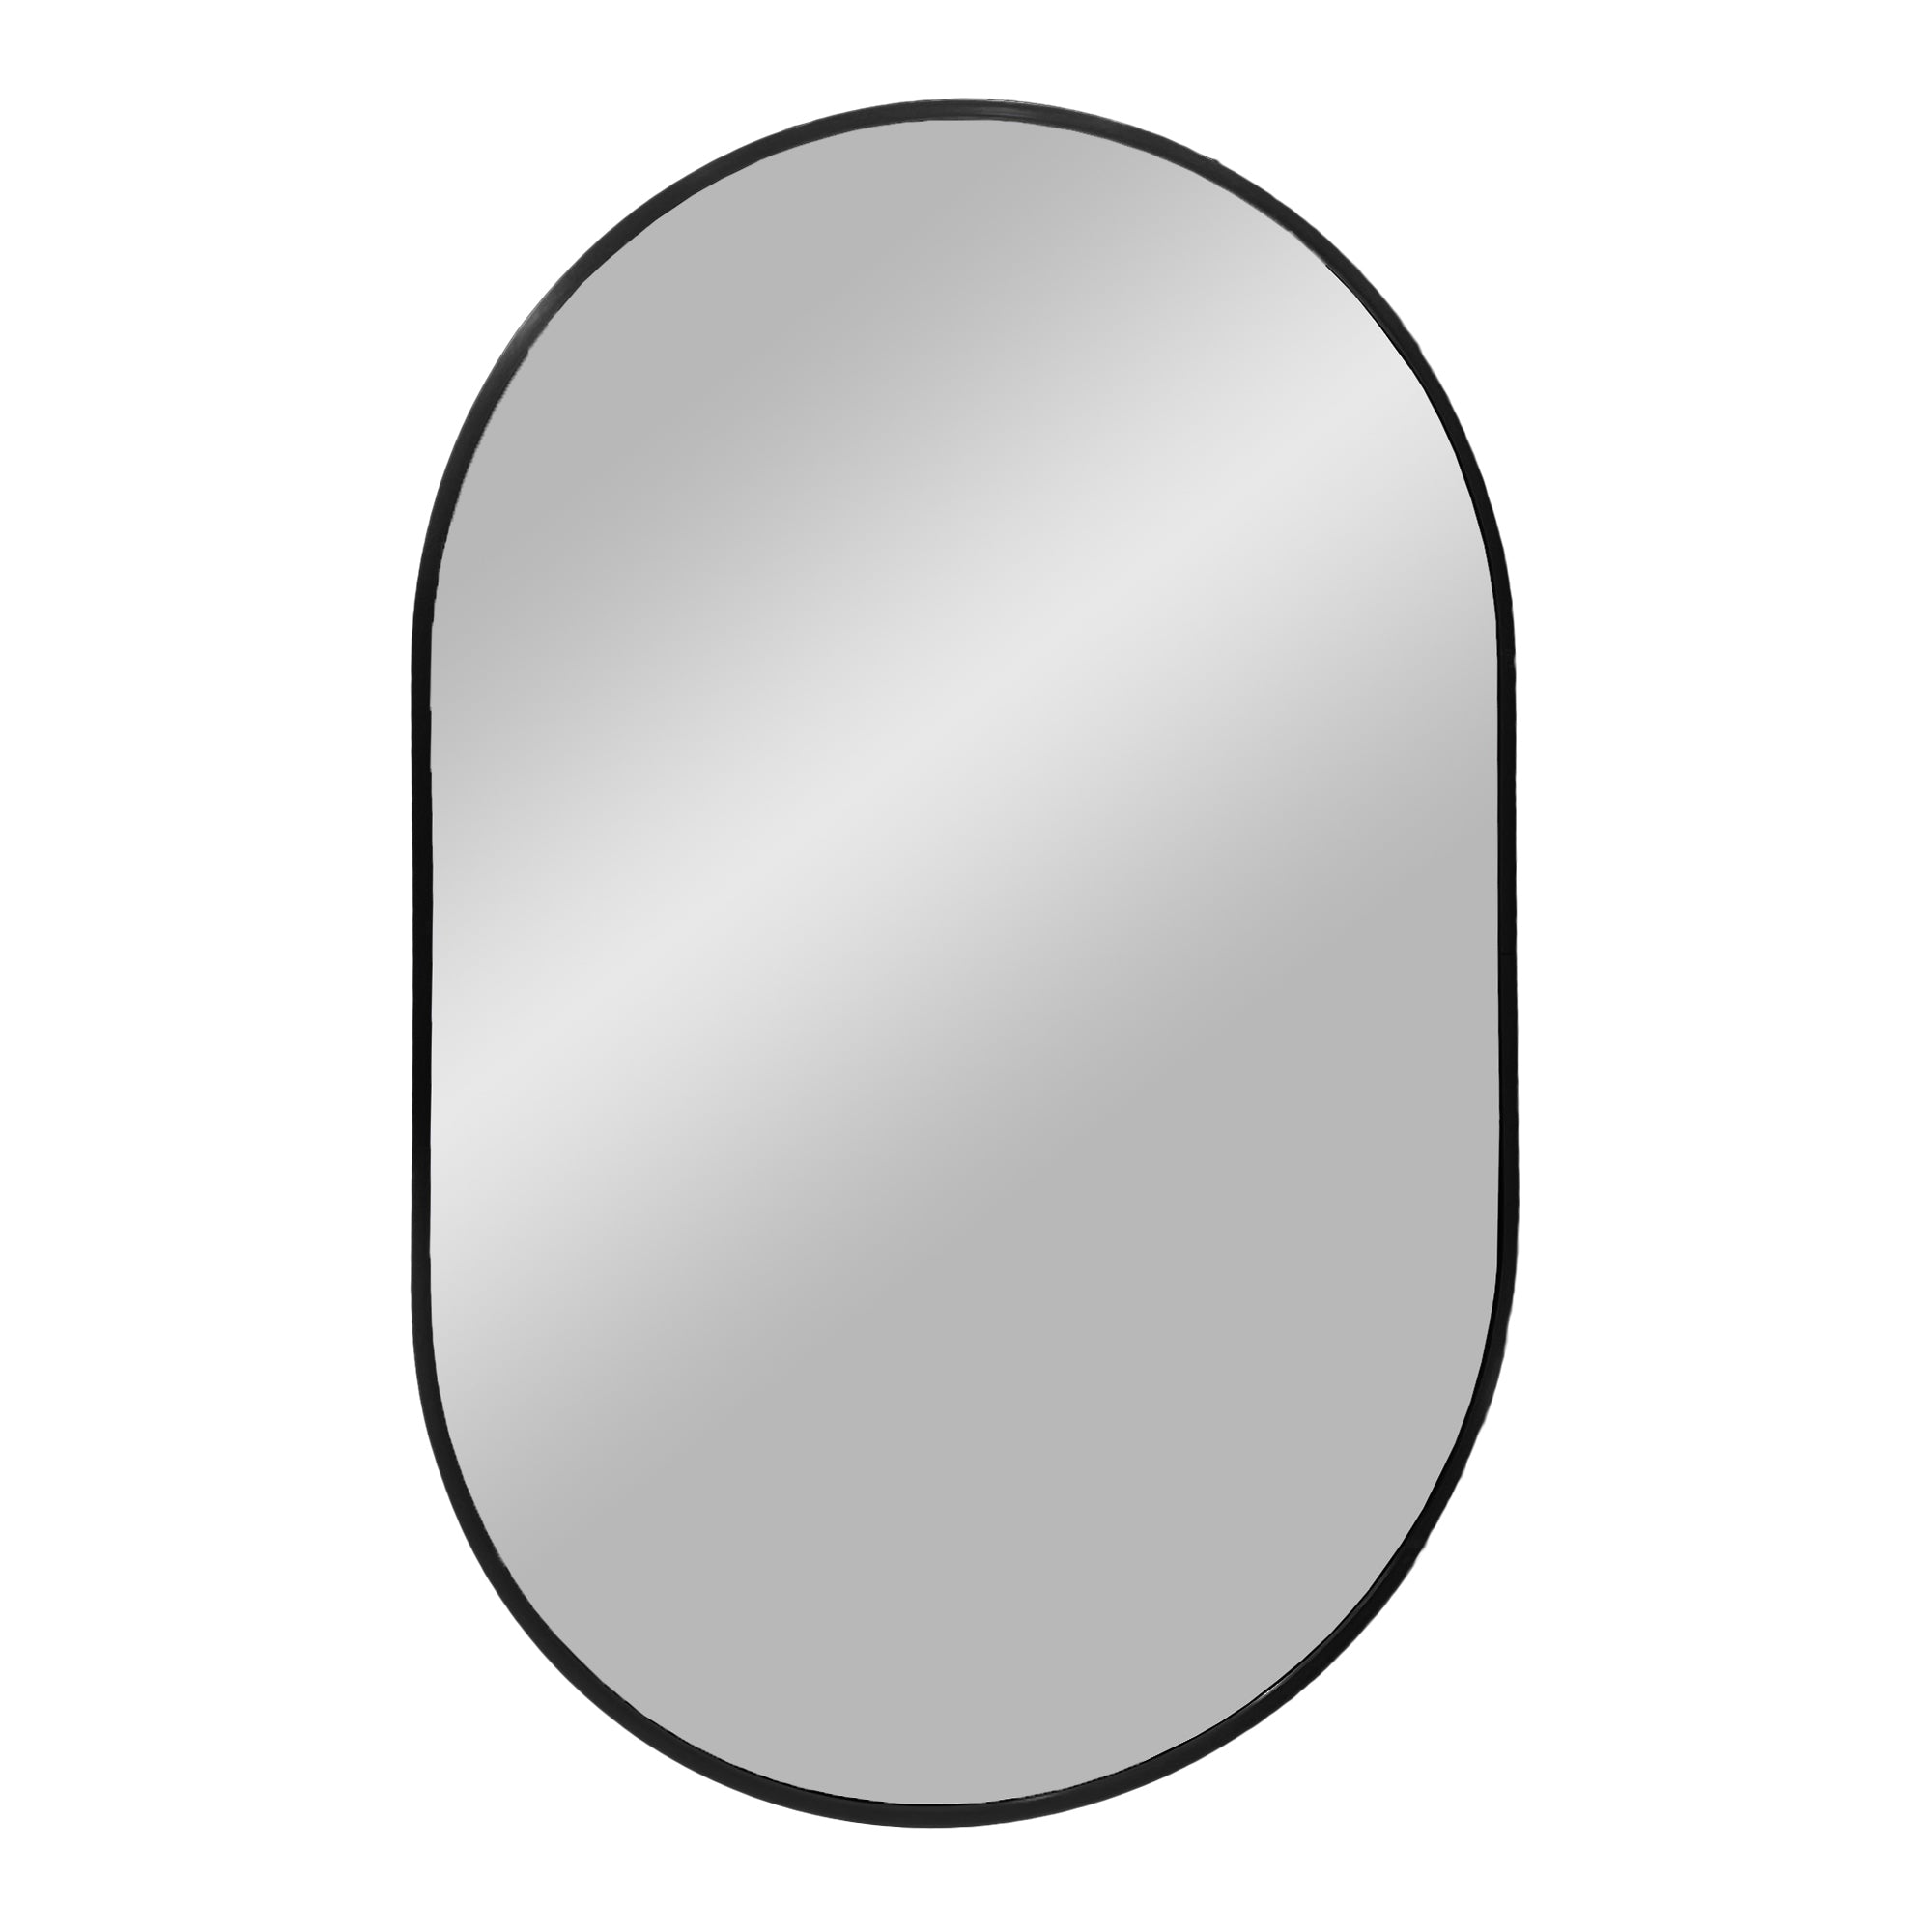 7: Madrid Spejl - Spejl i aluminium, sort, 50x80 cm